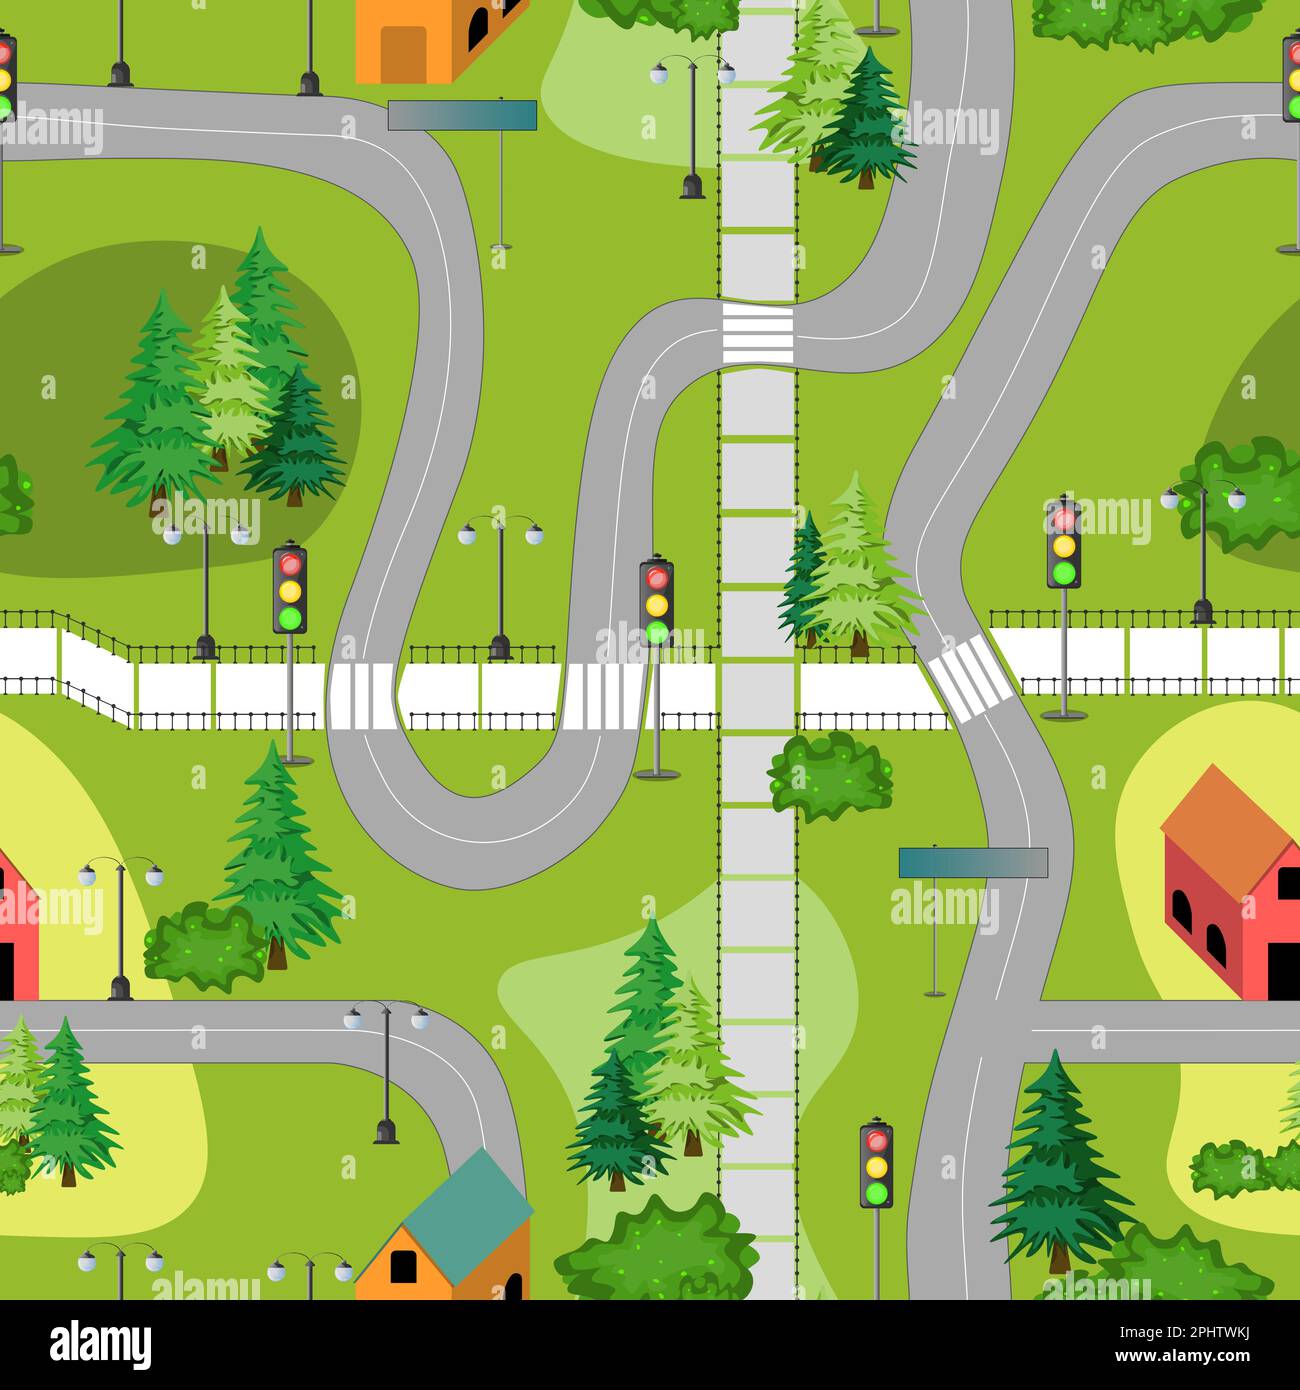 Modello senza cuciture con una piccola e graziosa mappa della città. Case, alberi, strade. Illustrazione vettoriale colorata. Illustrazione Vettoriale